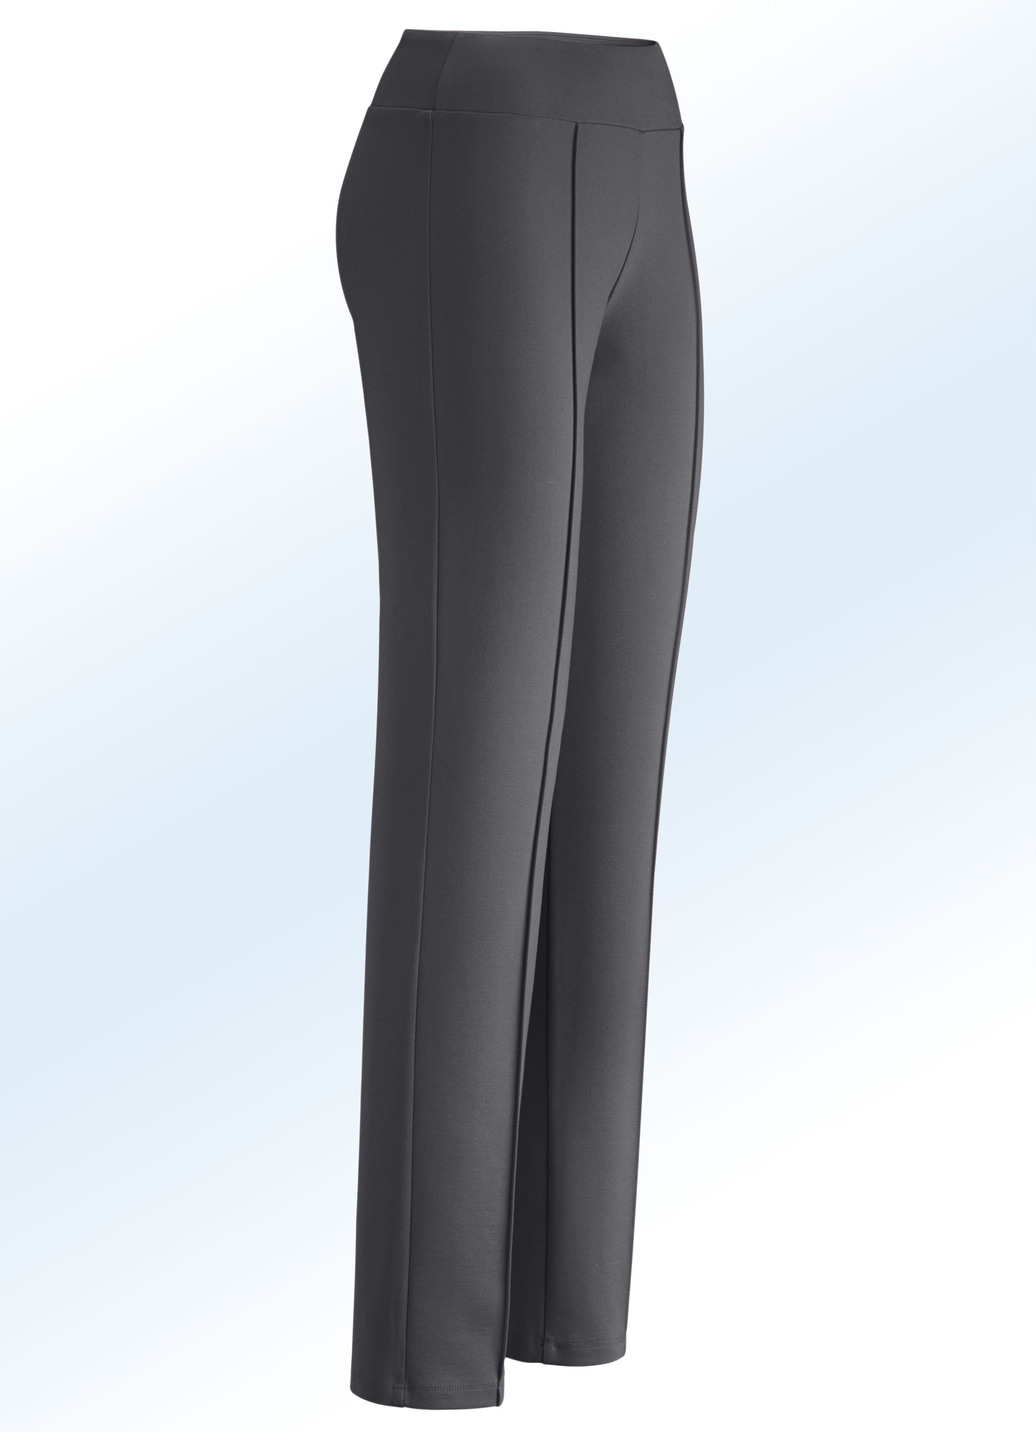 Jerseyhose mit höherem, elastischem Formbund, Dunkelgrau, Größe 23 von BADER